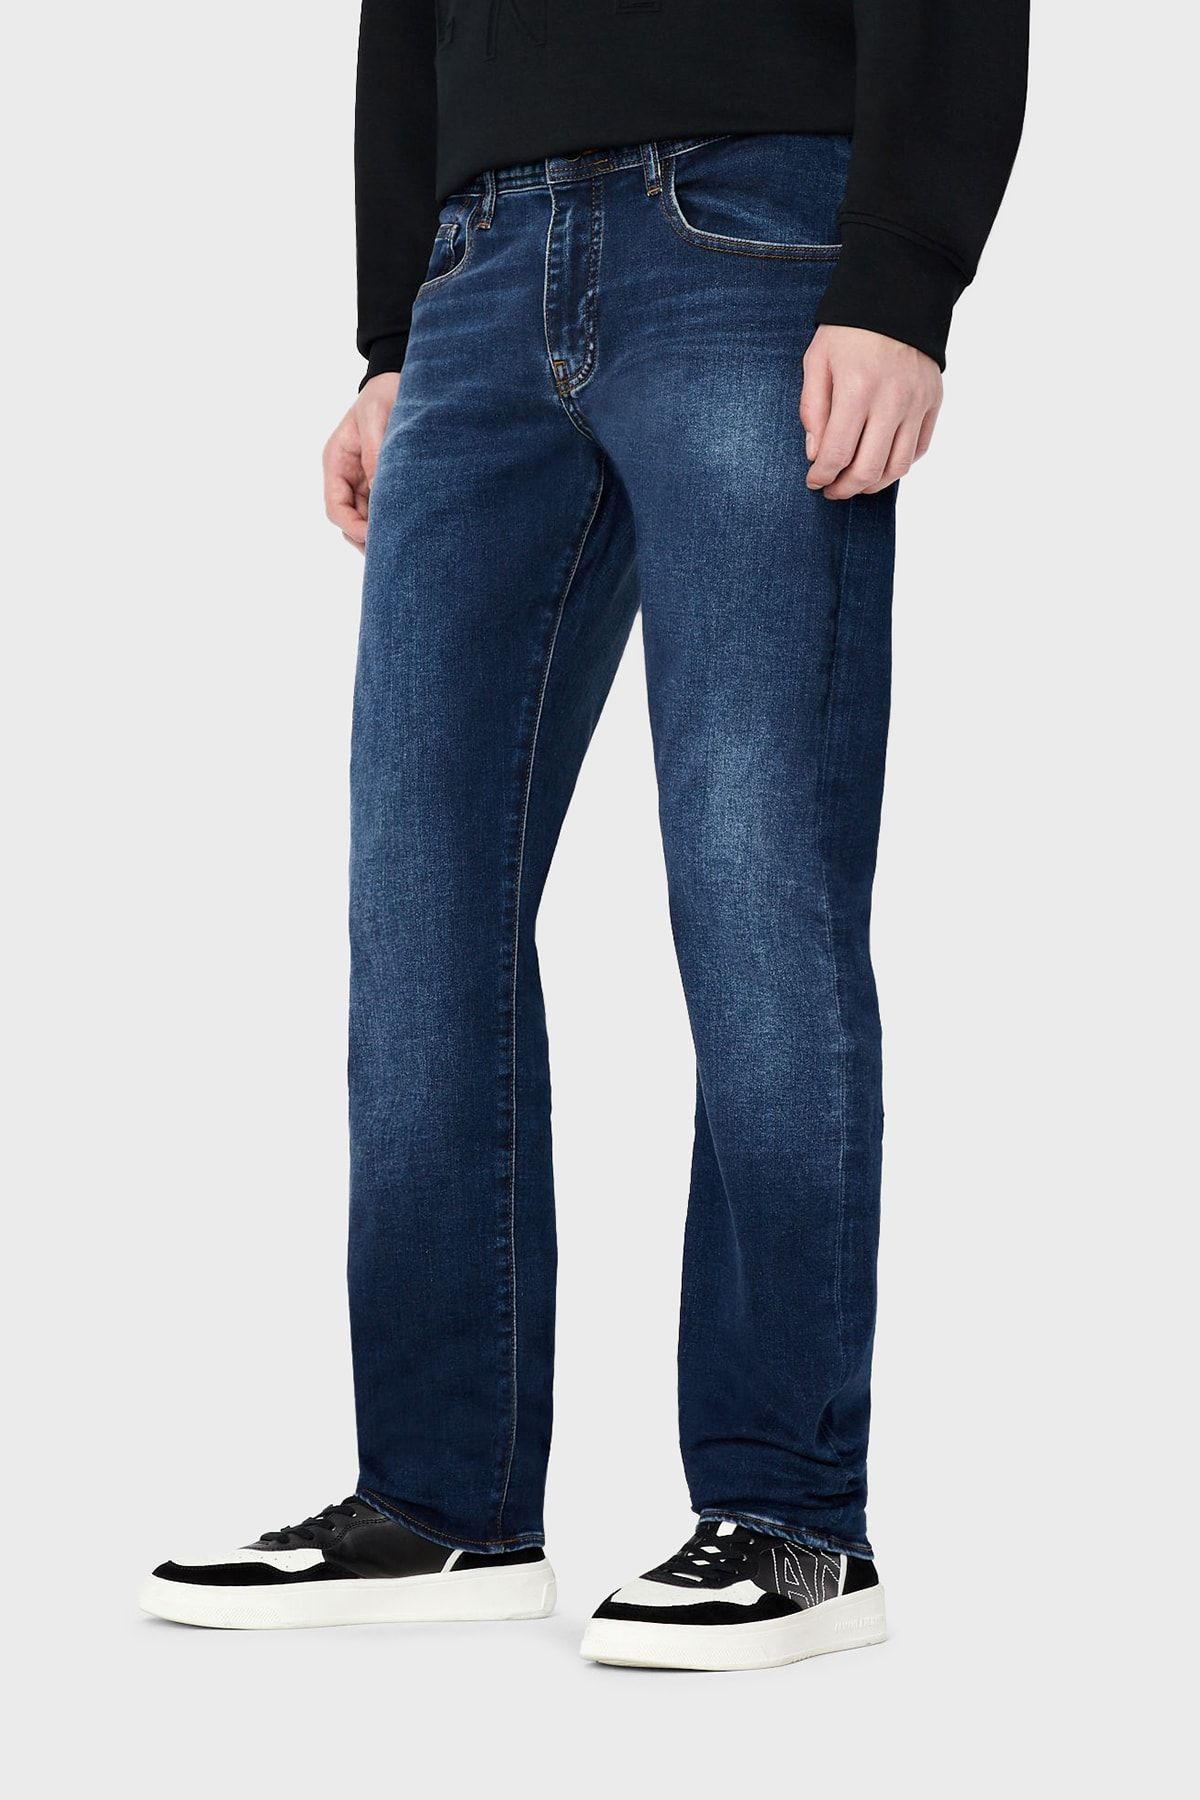 Armani Exchange Pamuklu Normal Bel Slim Fit J13 Jeans Erkek Kot Pantolon 3rzj13 Z1xxz 1500